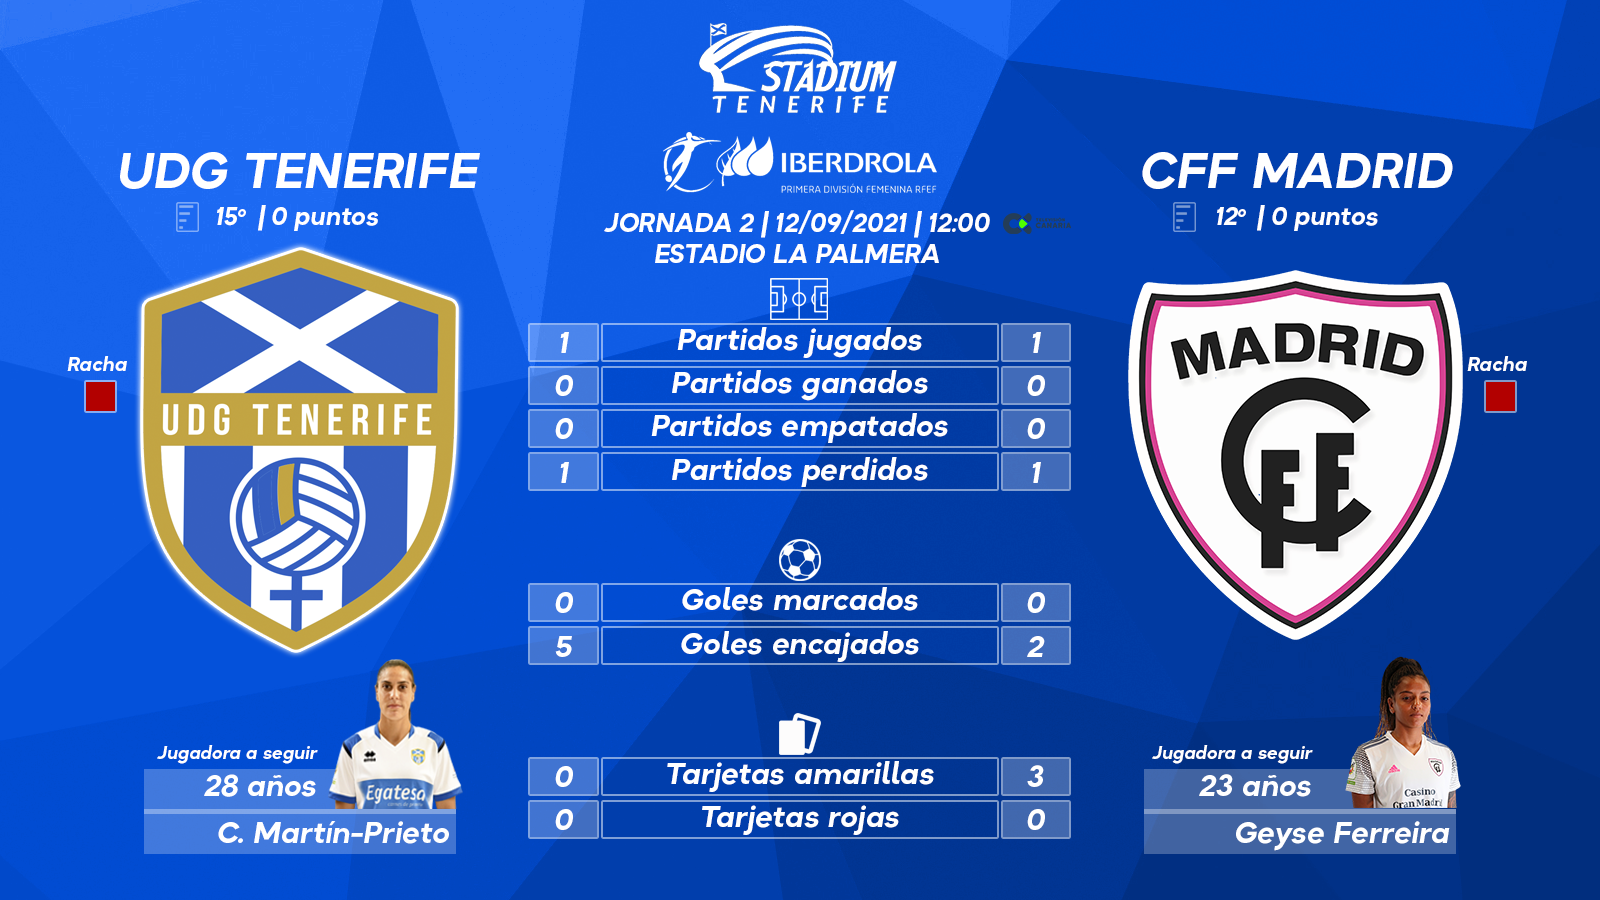 Previa del UDG Tenerife - Madrid CFF (2ªJ.-Primera Iberdrola)